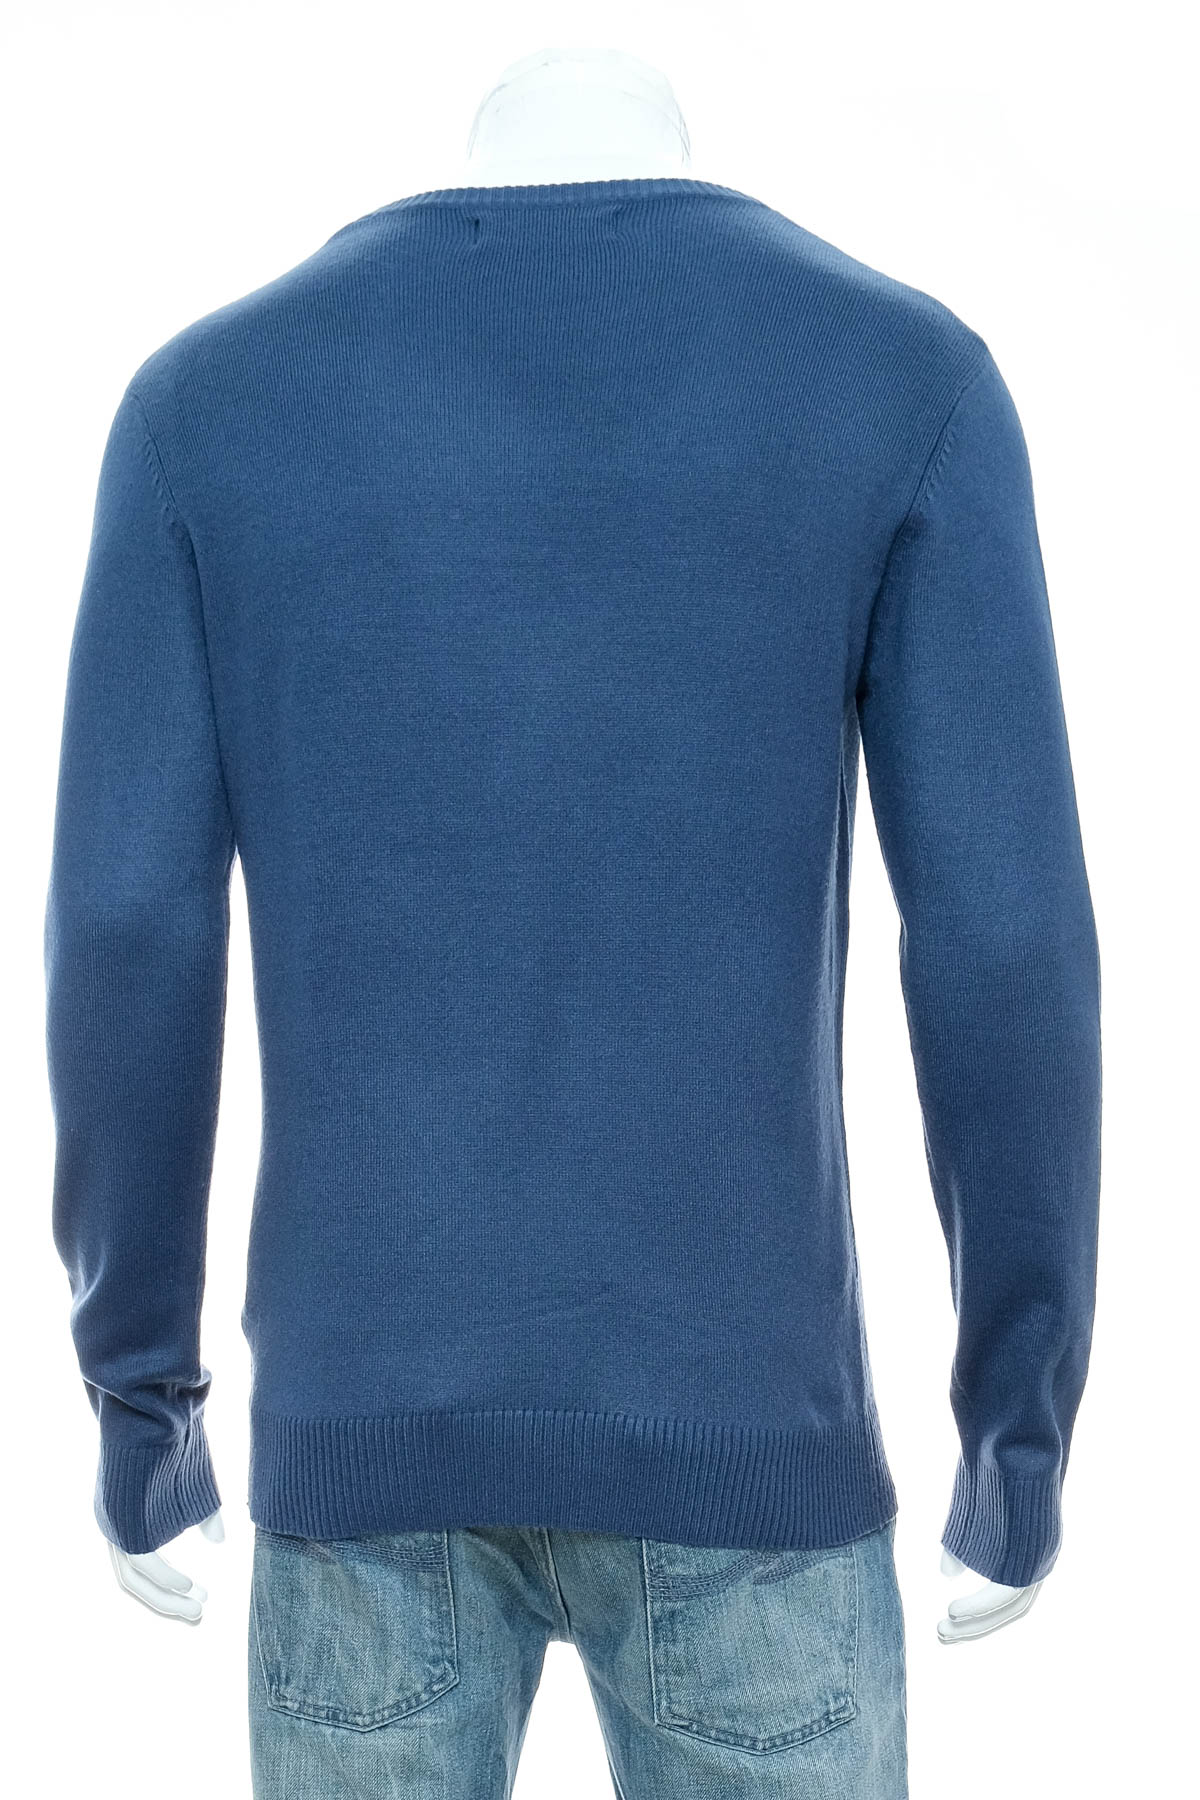 Men's sweater - Kenvelo - 1